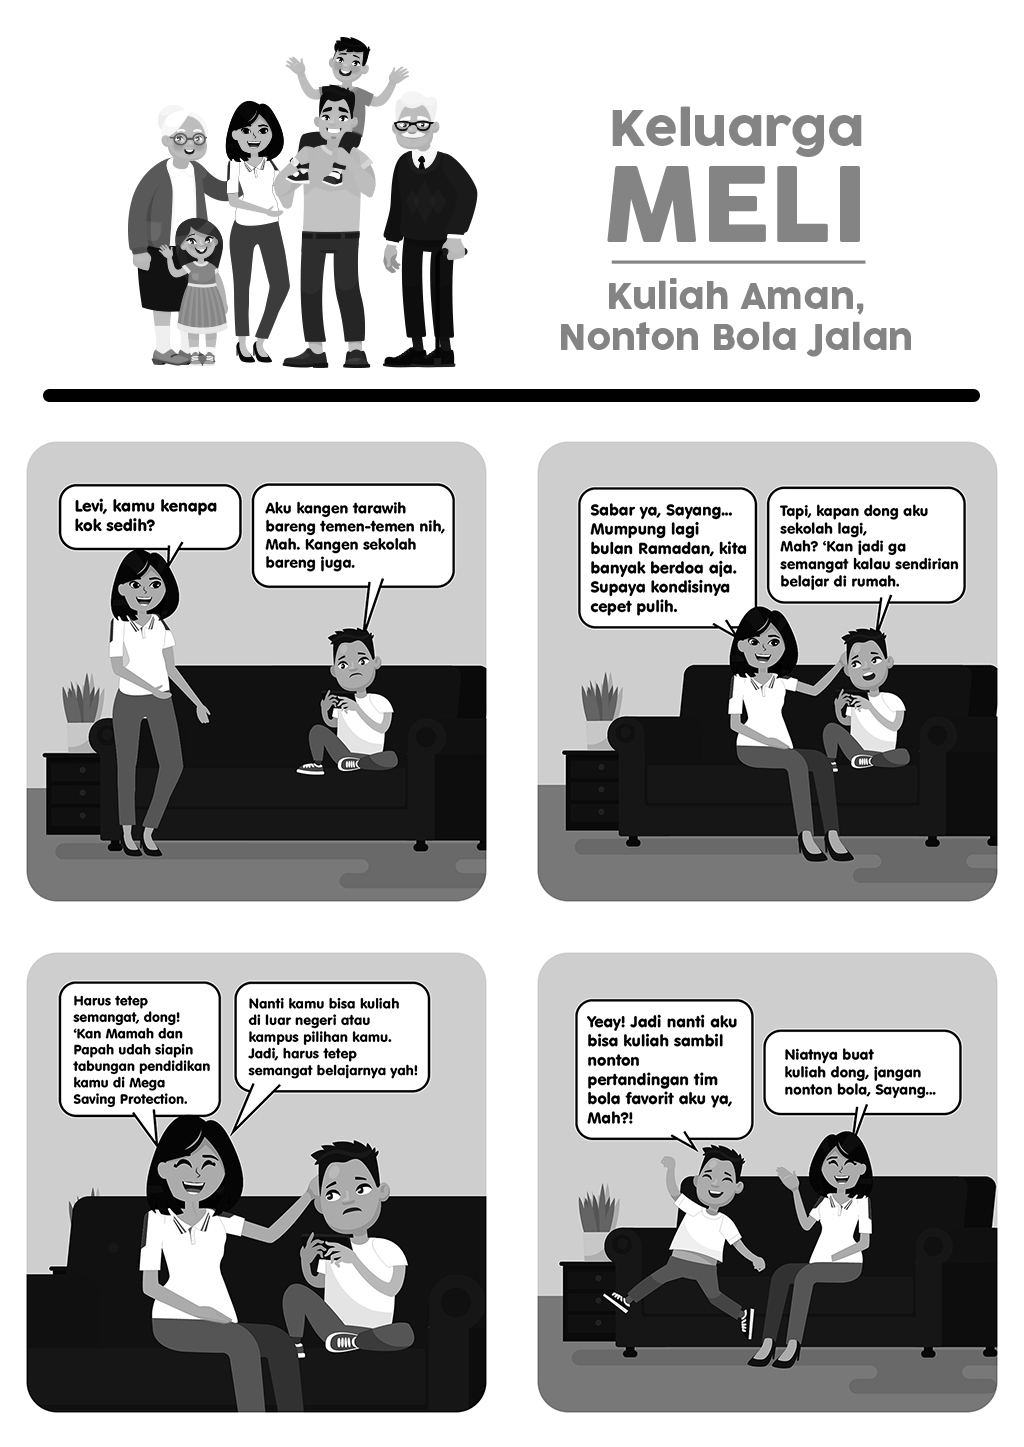 Komik Strip: Keluarga Meli - Kuliah Aman, Nonton Bola Jalan!